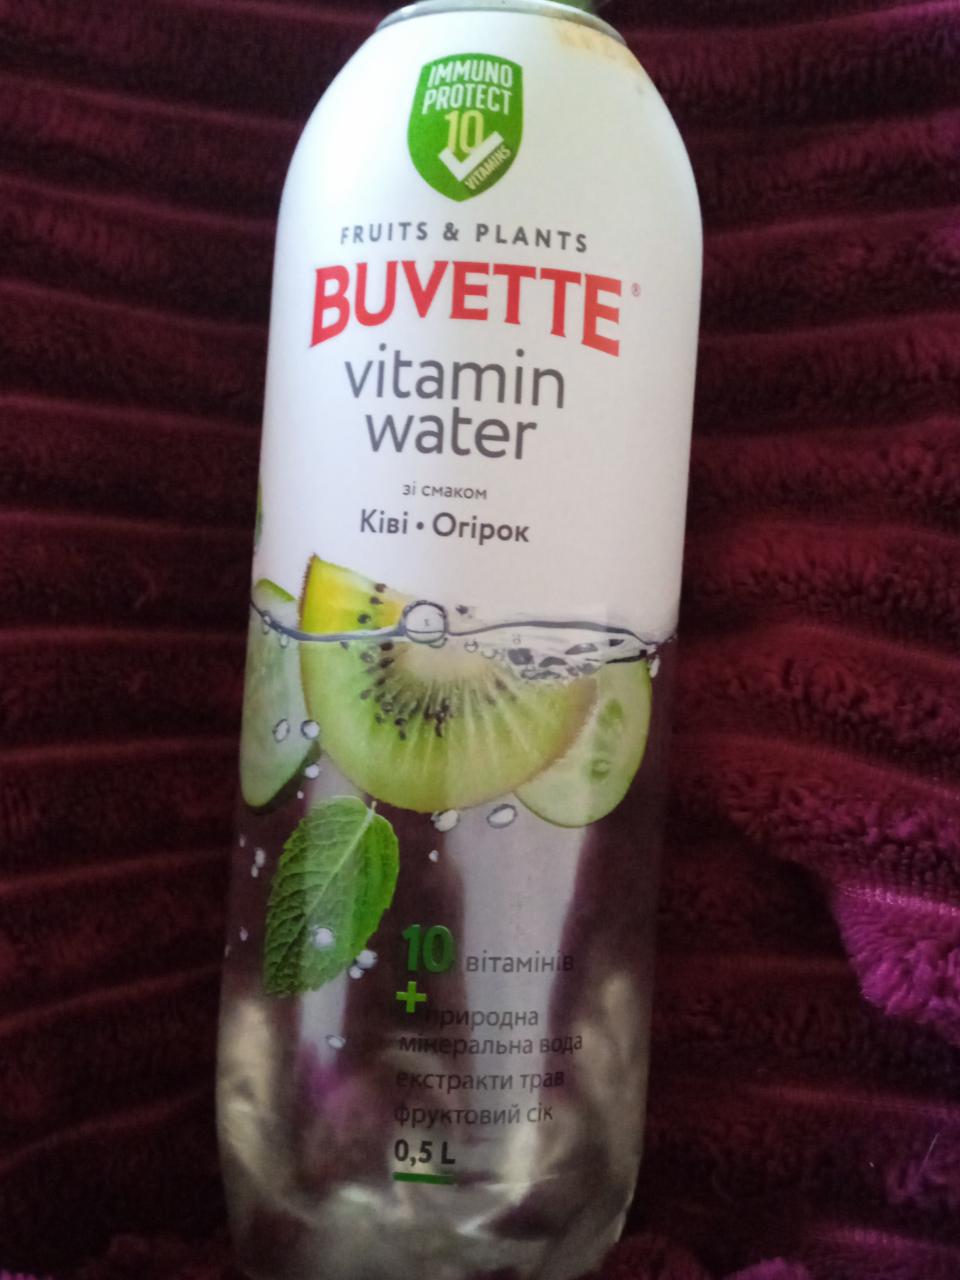 Фото - Витаминная вода со вкусом огурца и киви Buvette